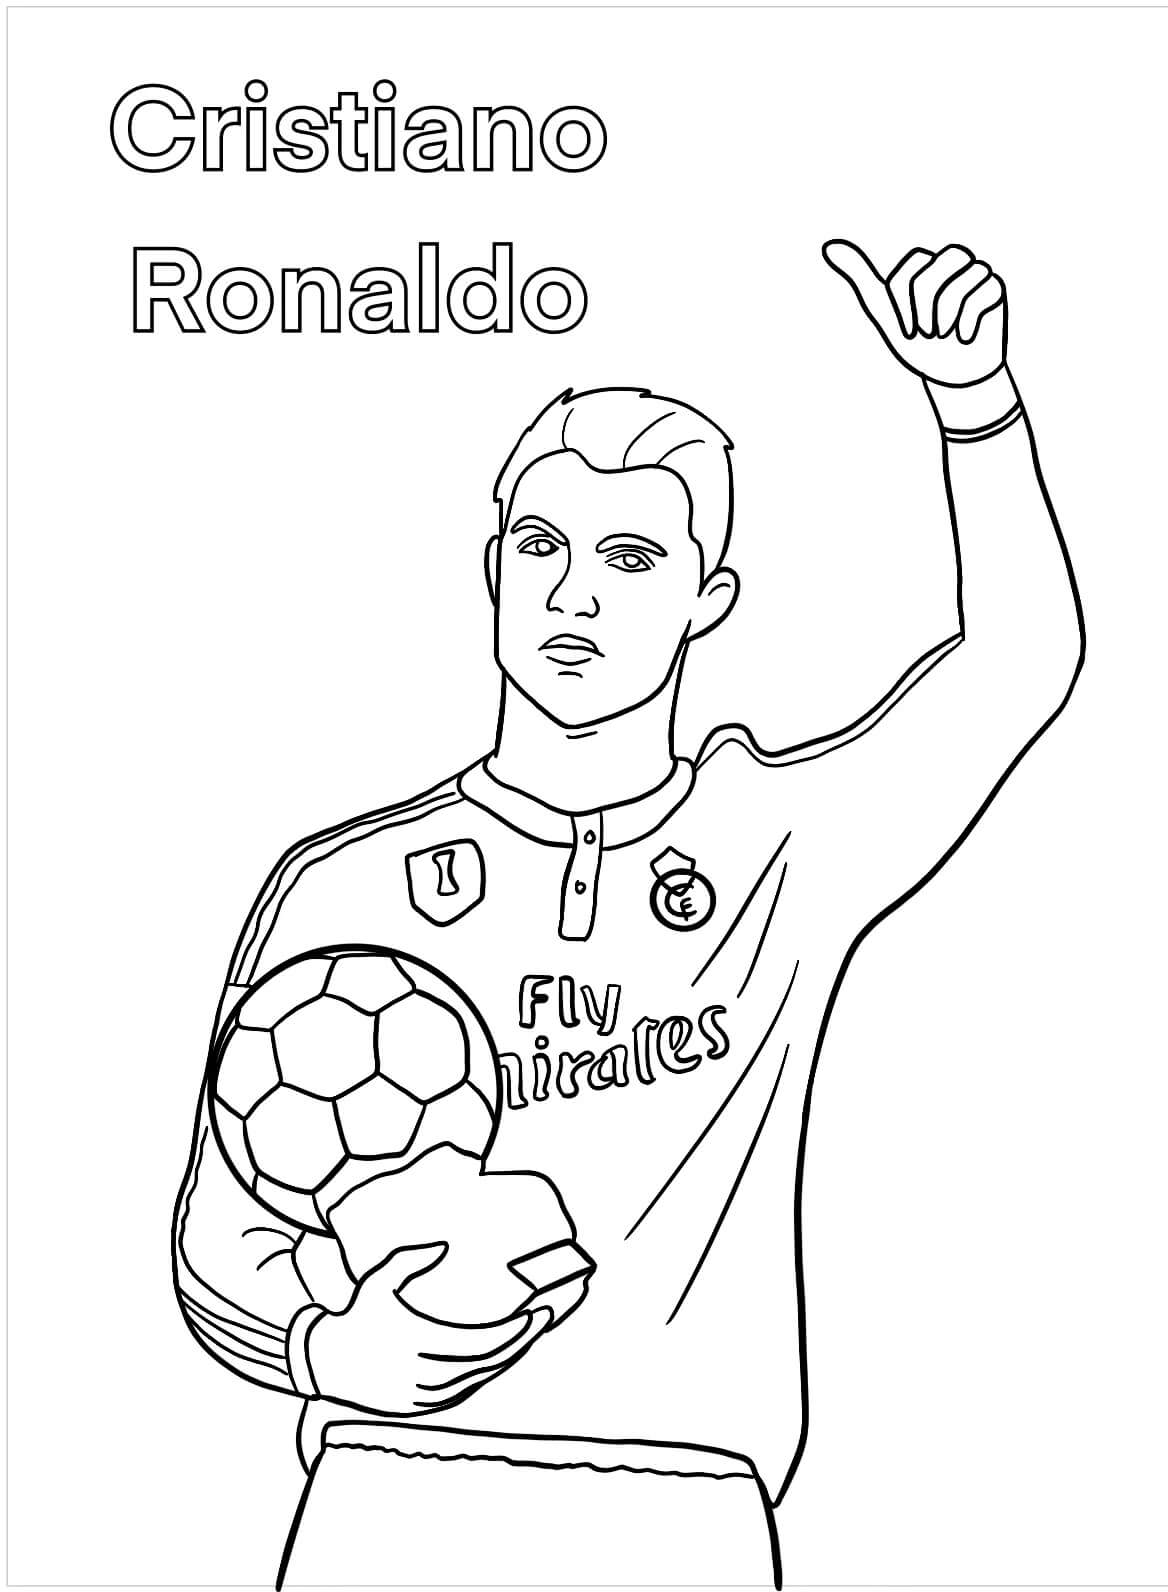 Das Gesicht von Cristiano Ronaldo